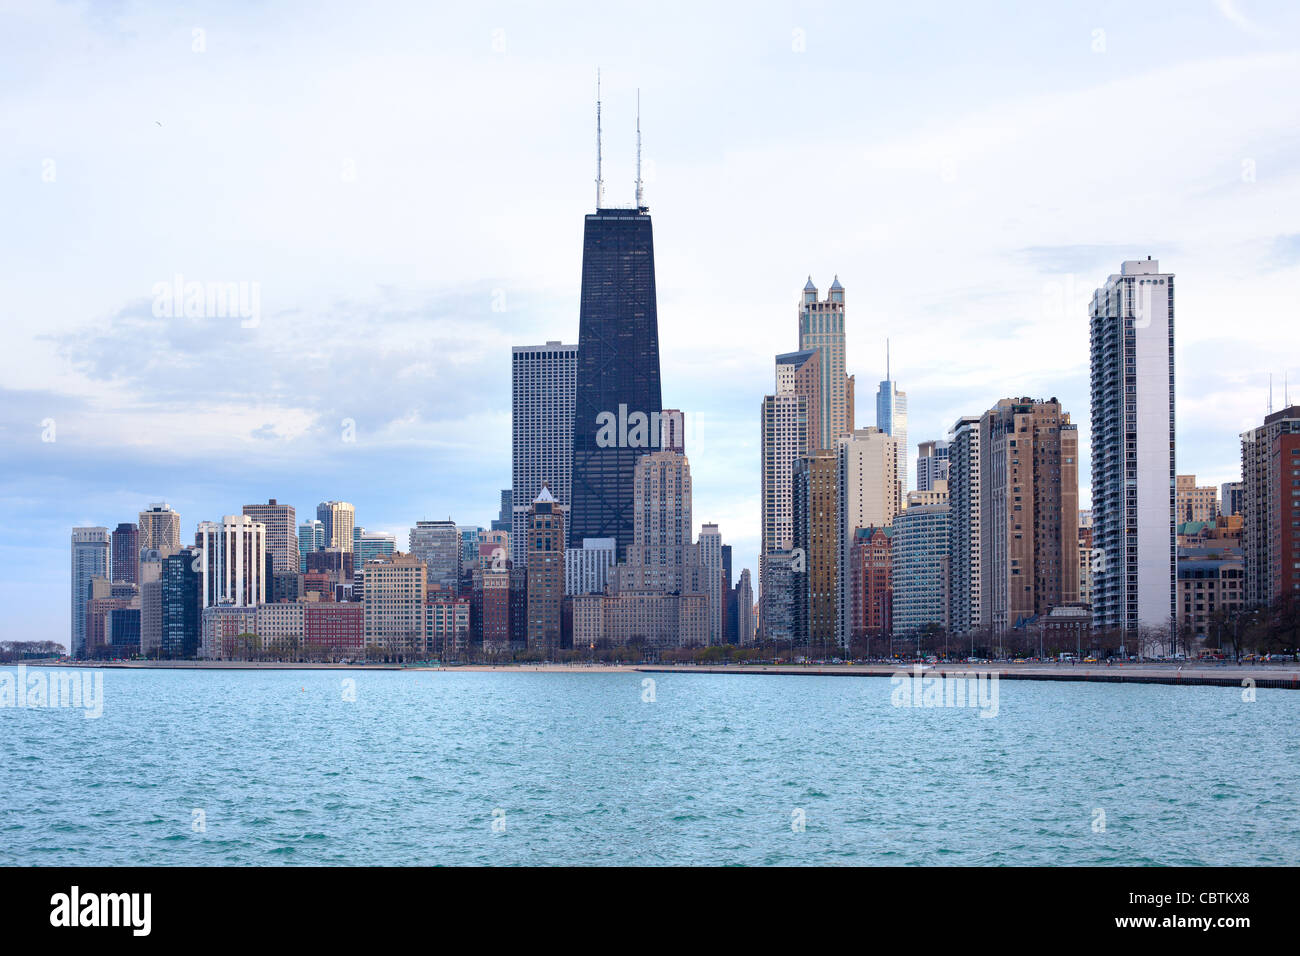 Downtown skyline, Chicago, Illinois, USA Stock Photo